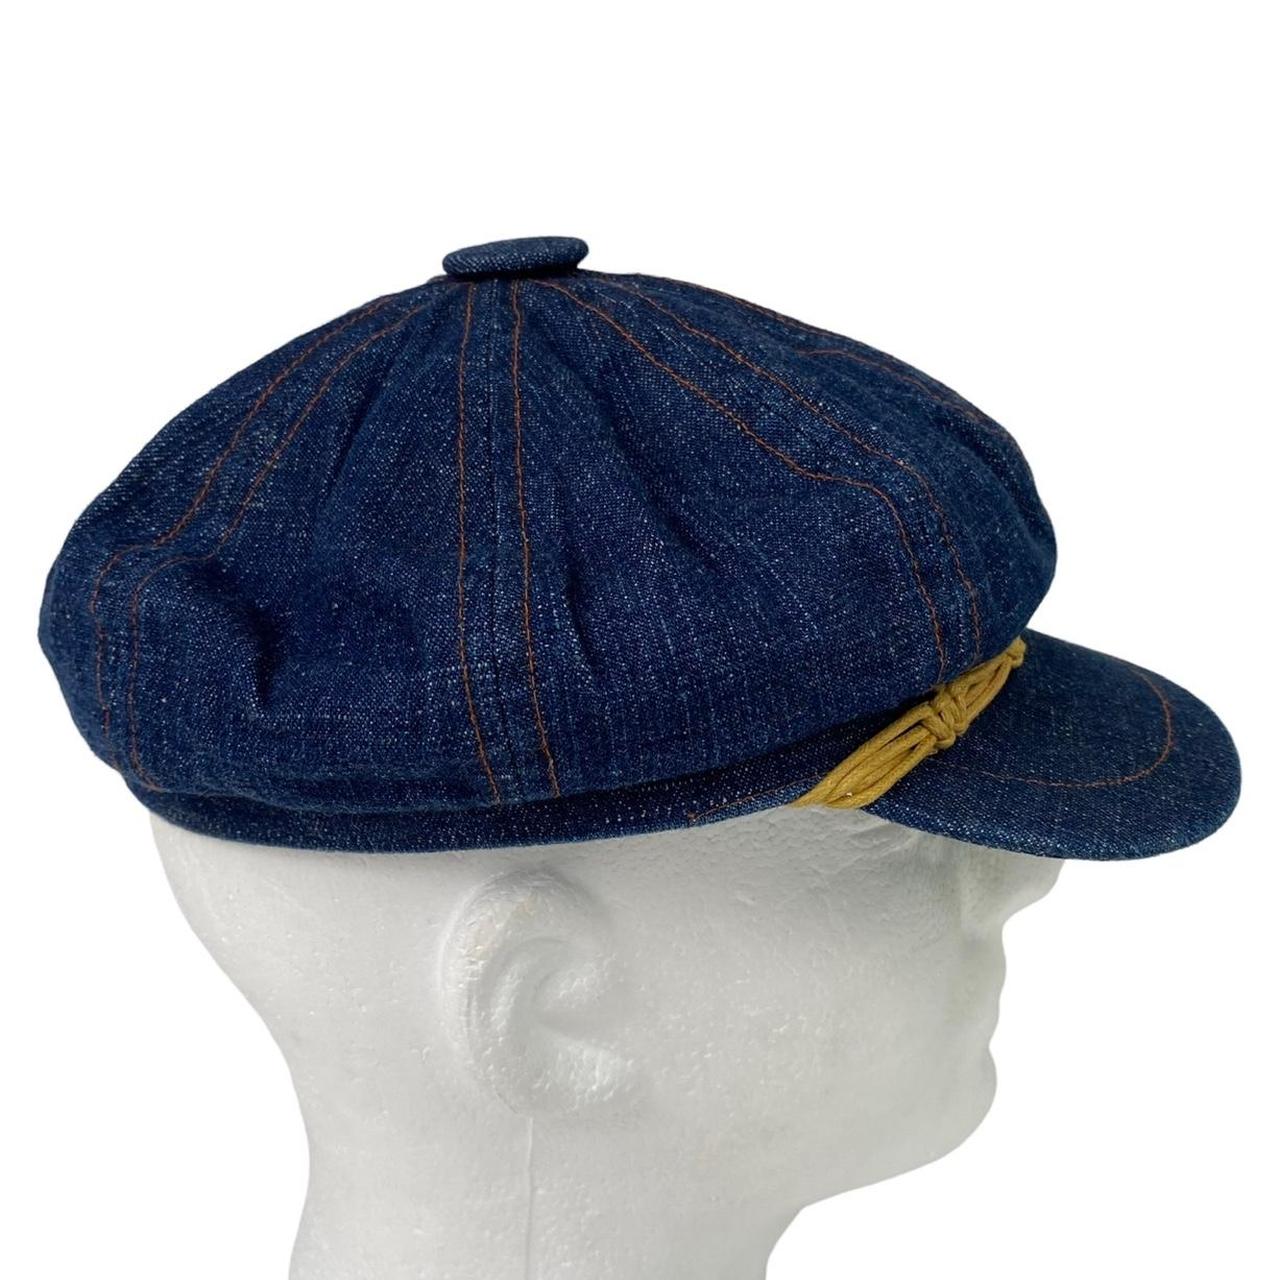 Vintage Dockers Paperboy Newsboy Baker Hat Denim... - Depop